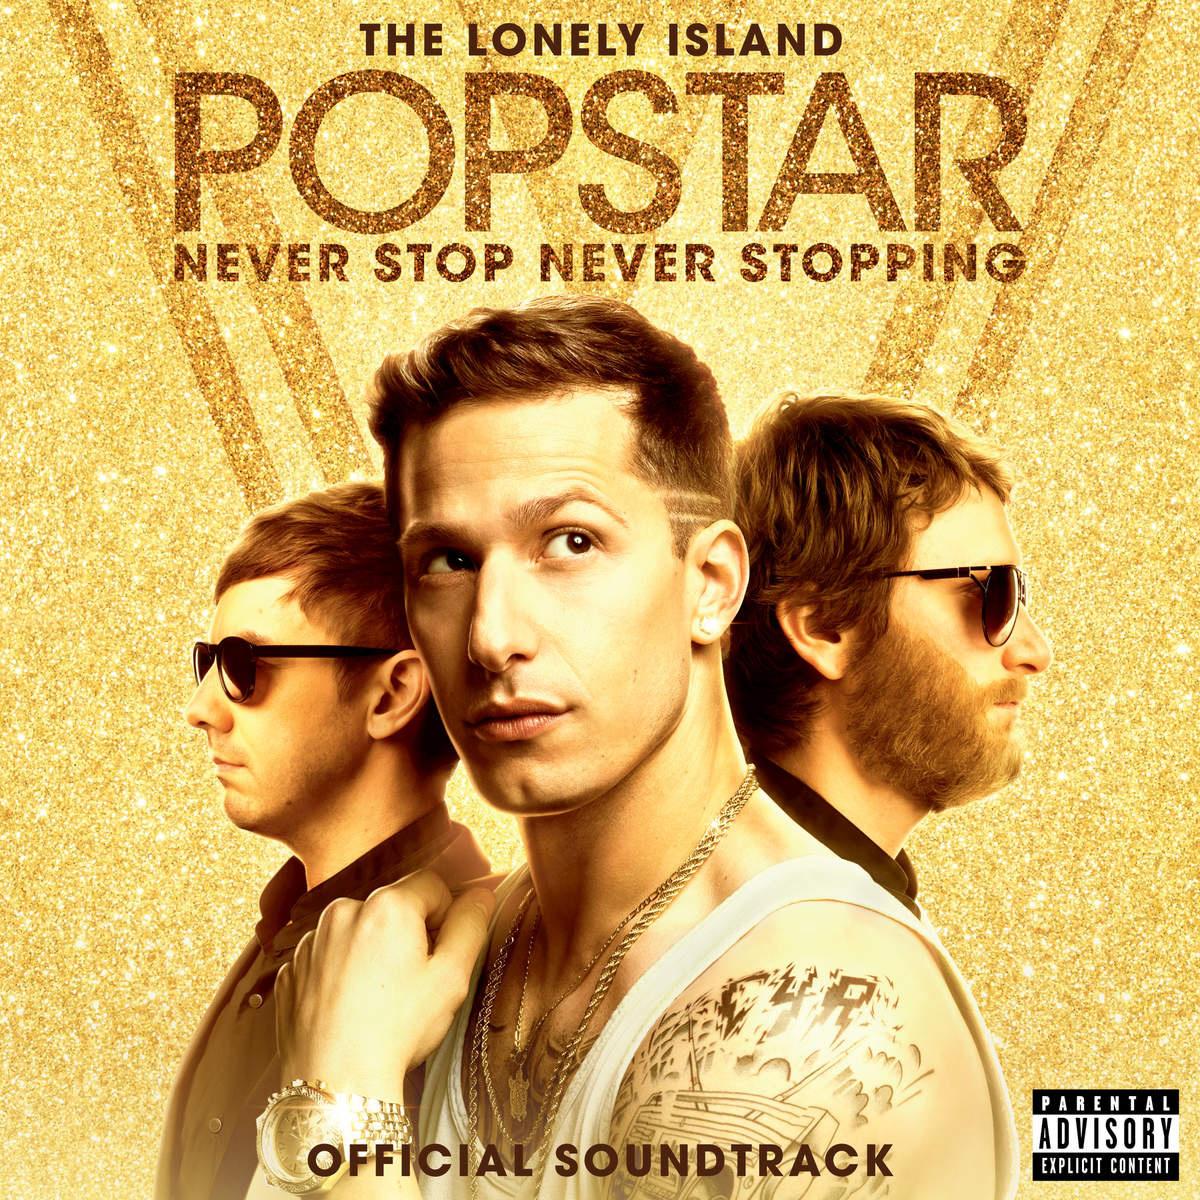 Popstar: Never Stop Never Stopping (Soundtrack)